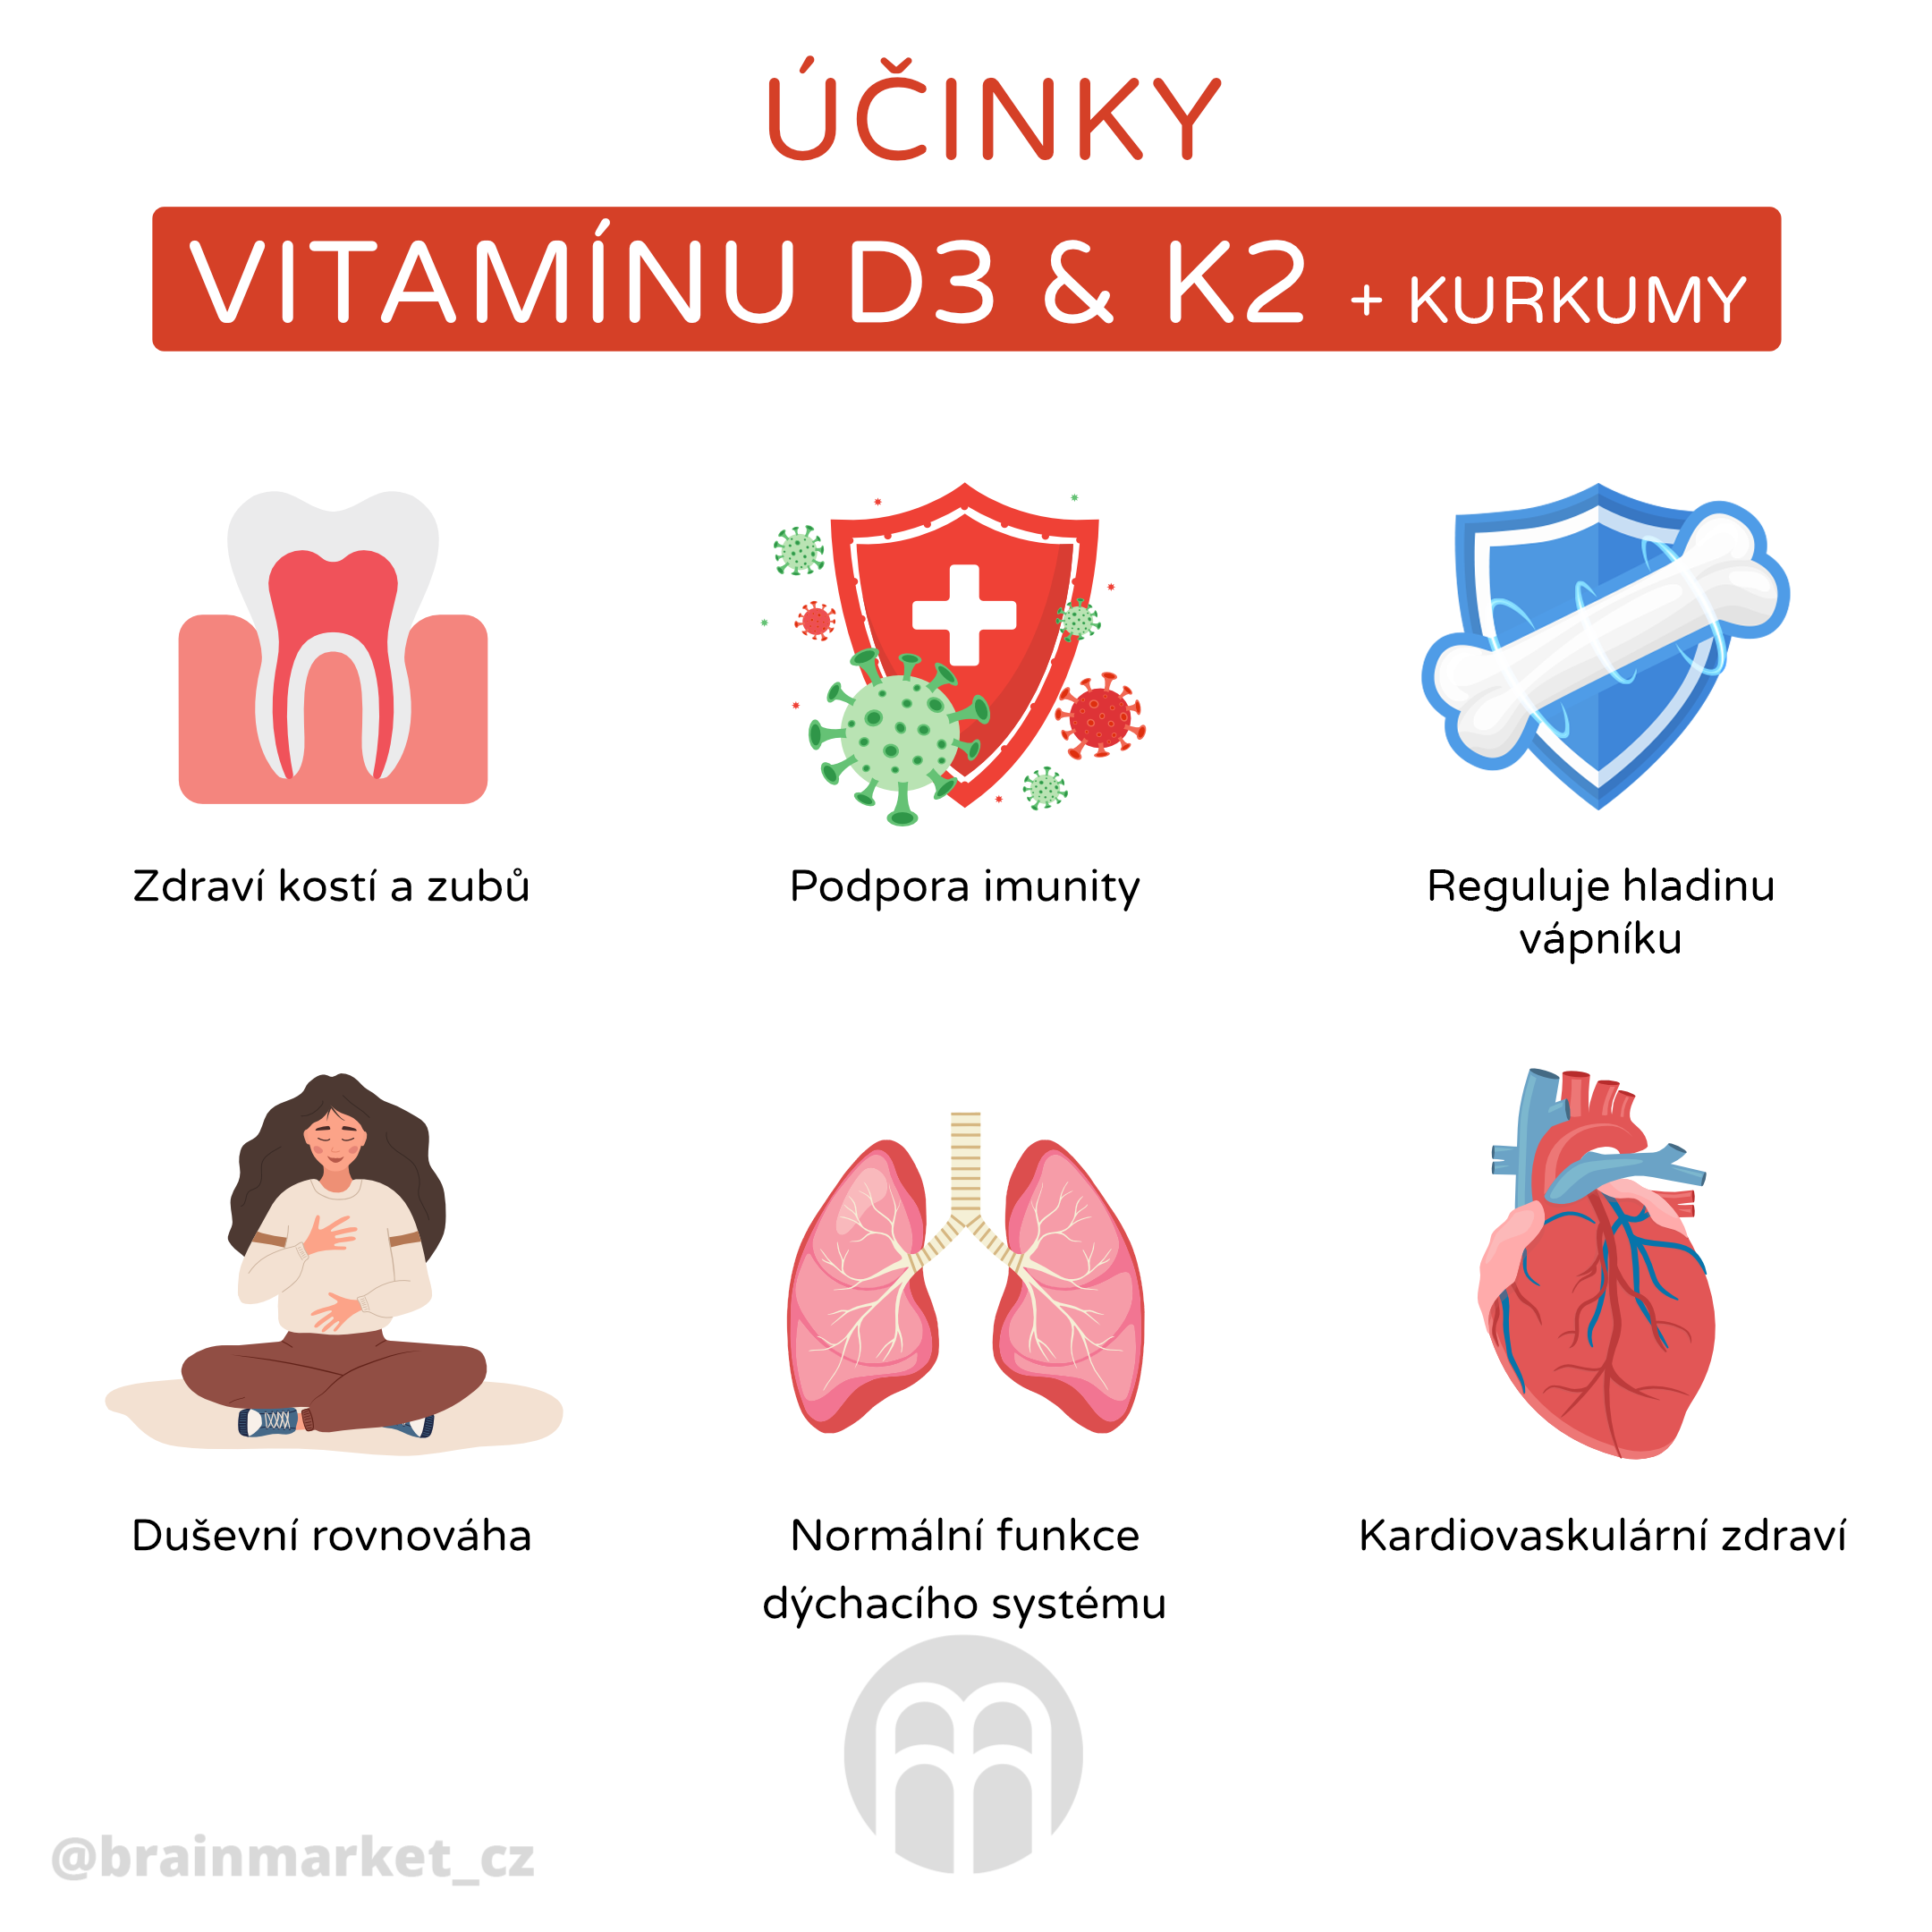 ucinky vitaminu K,D,kurkuma_infografika_cz (1)